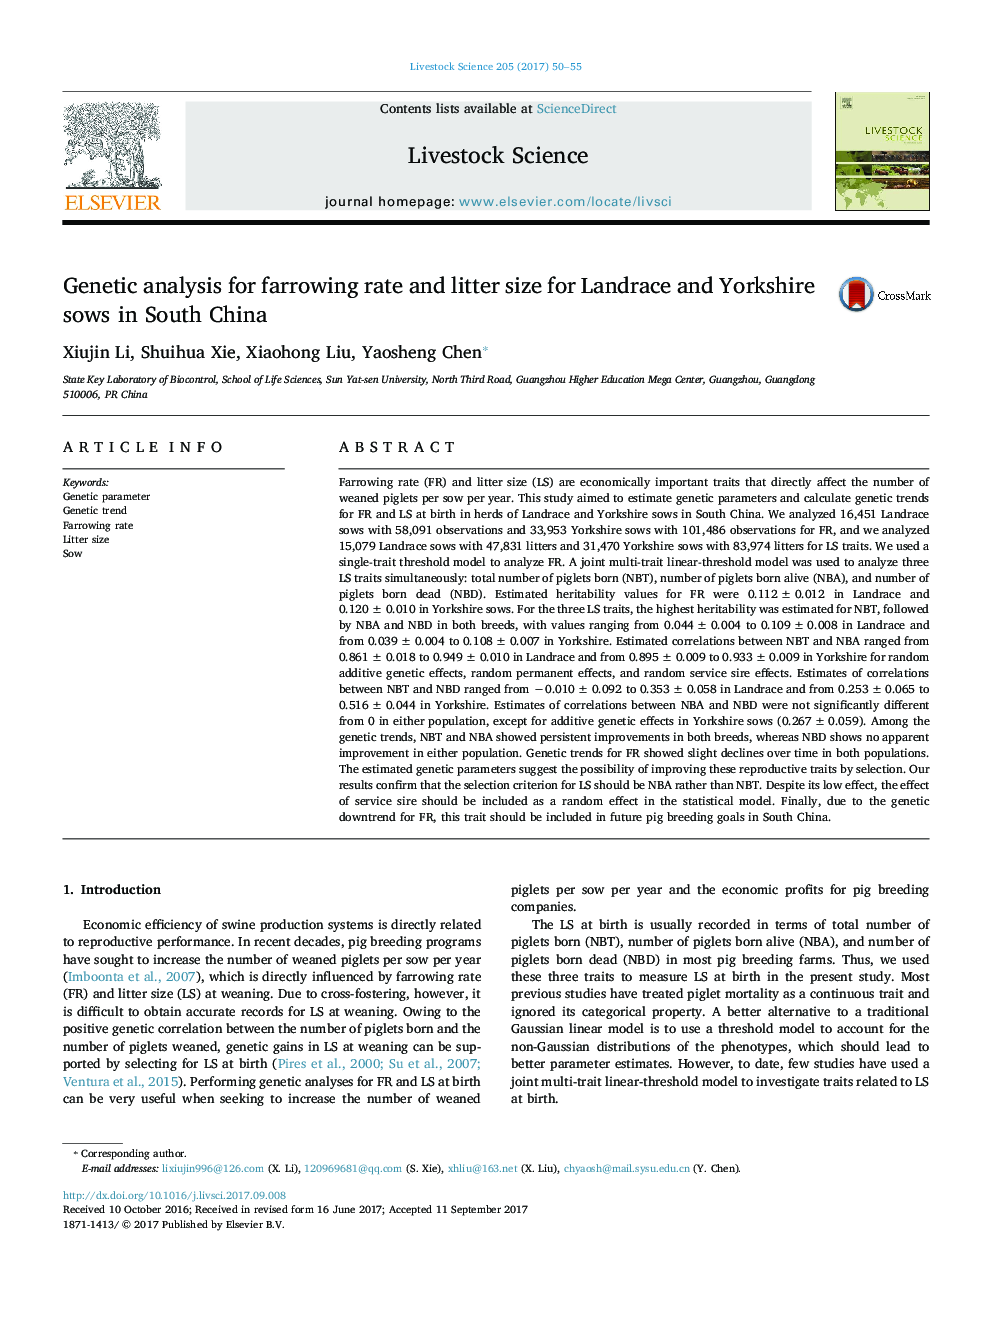 تجزیه و تحلیل ژنتیکی برای میزان پرورش و اندازه بستر برای گاوهای لاندریس و یورکشایر در جنوب چین 